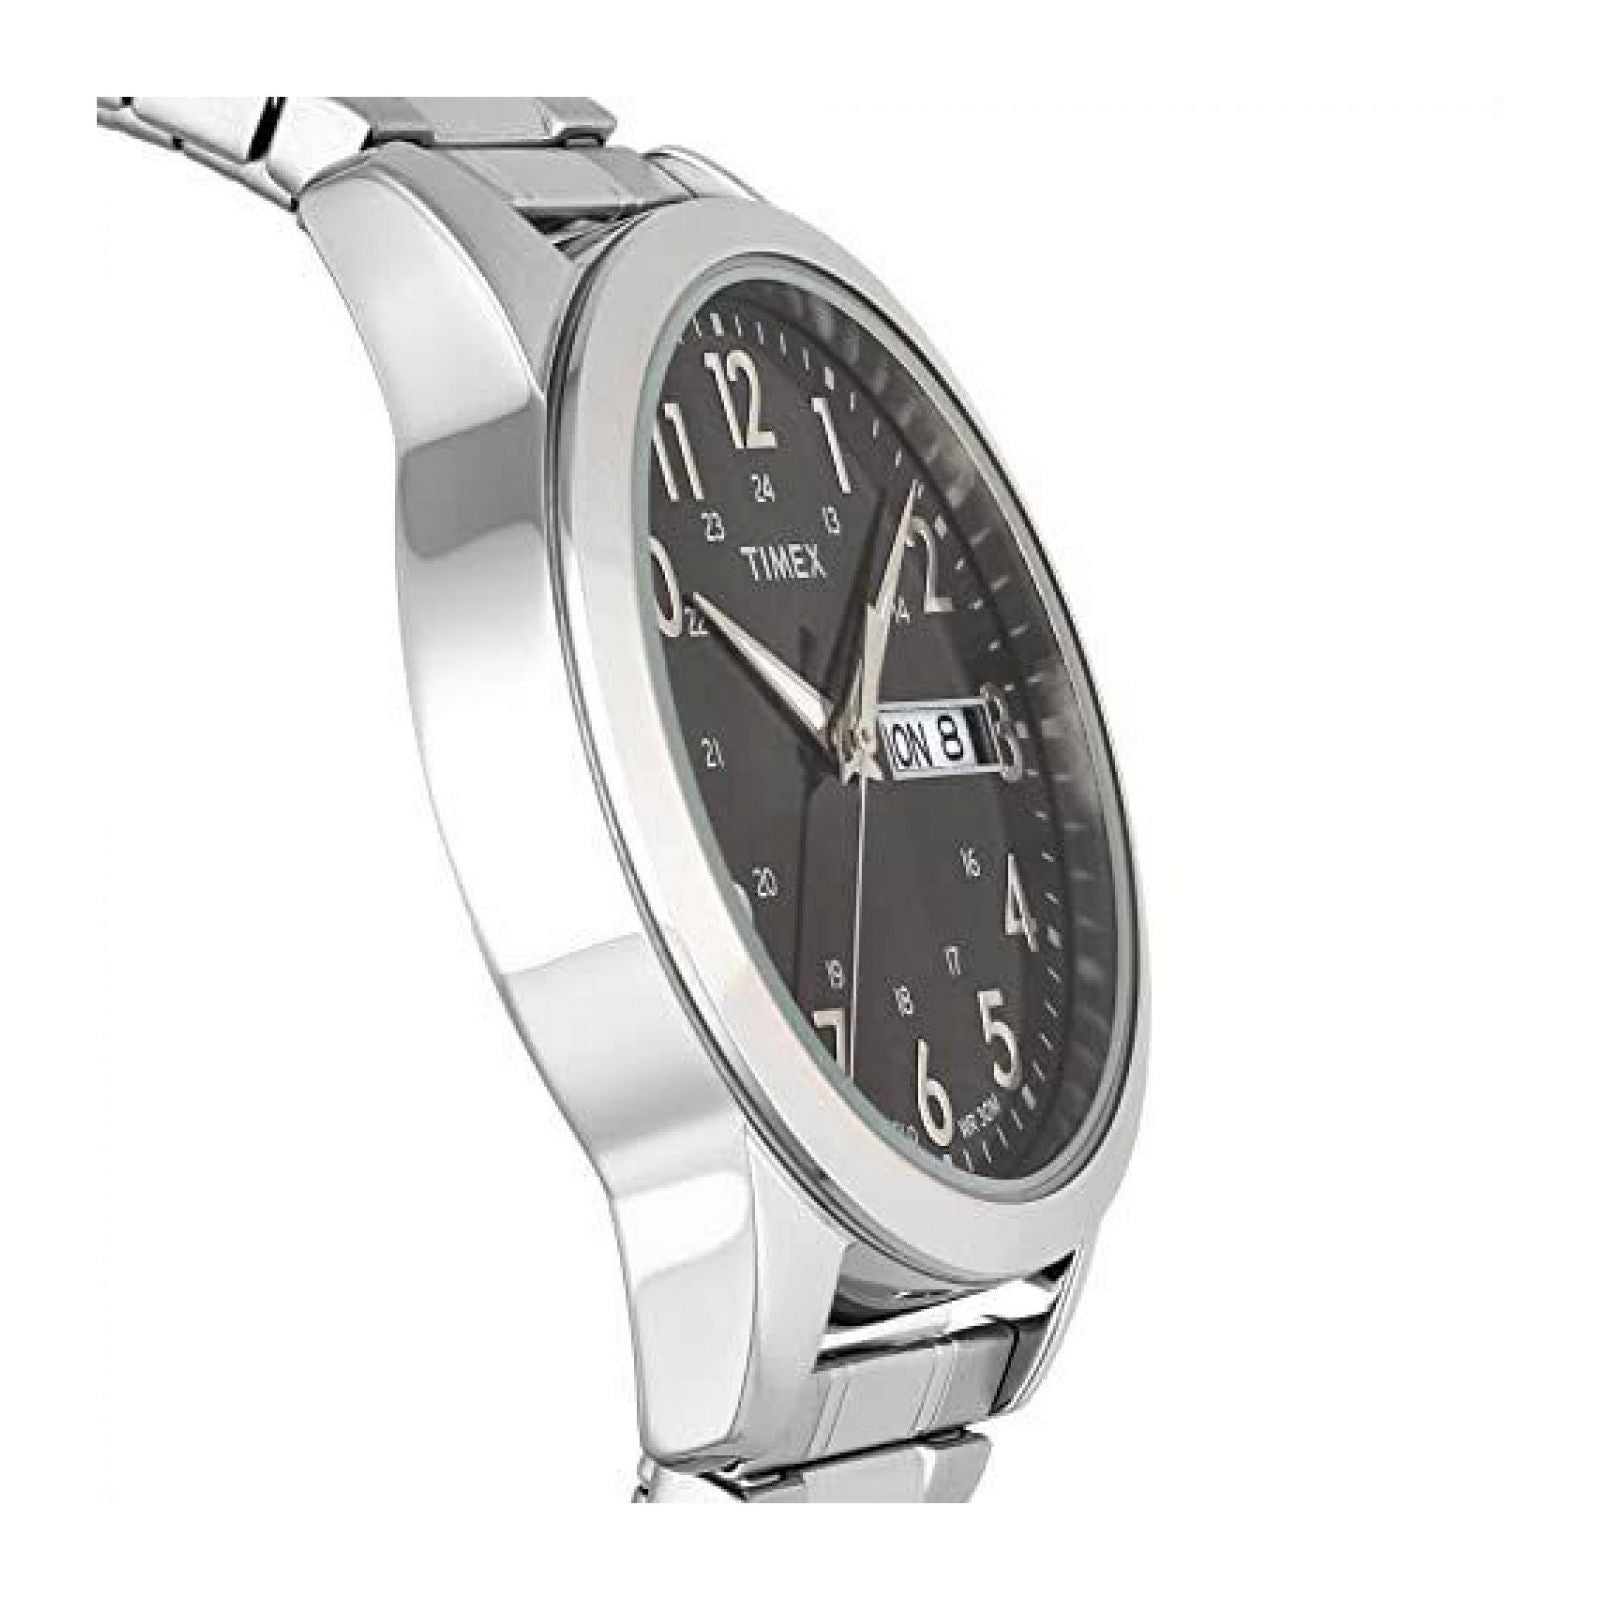 Reloj Timex Hombre TWG027900